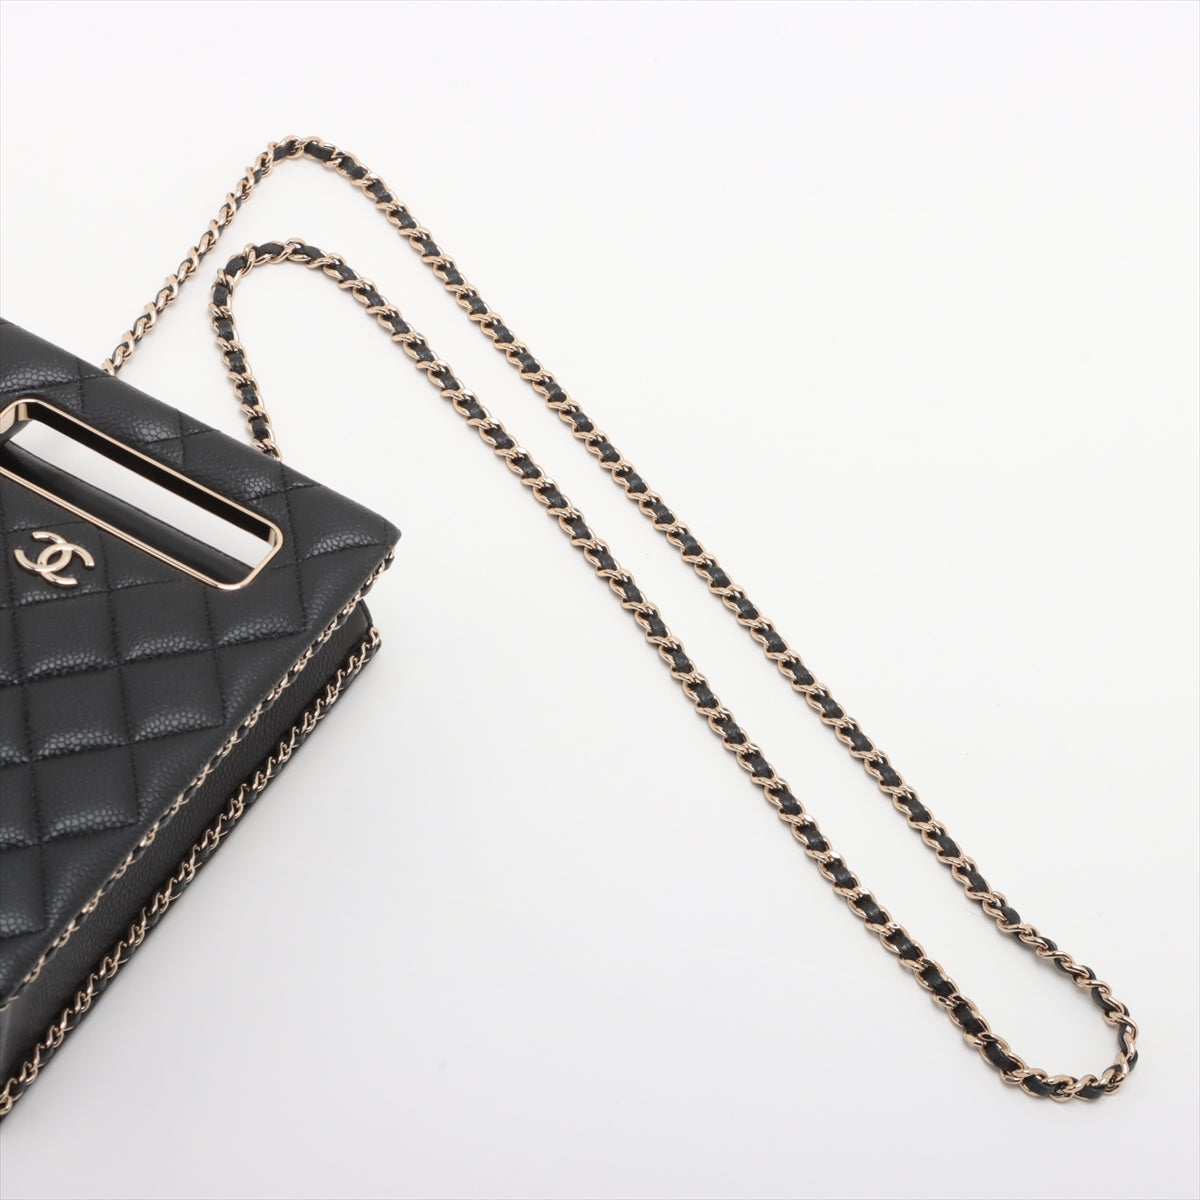 Chanel Matelasse Caviar Skin Chain Shoulder Bag Black Gold Metal Fittings AS3314